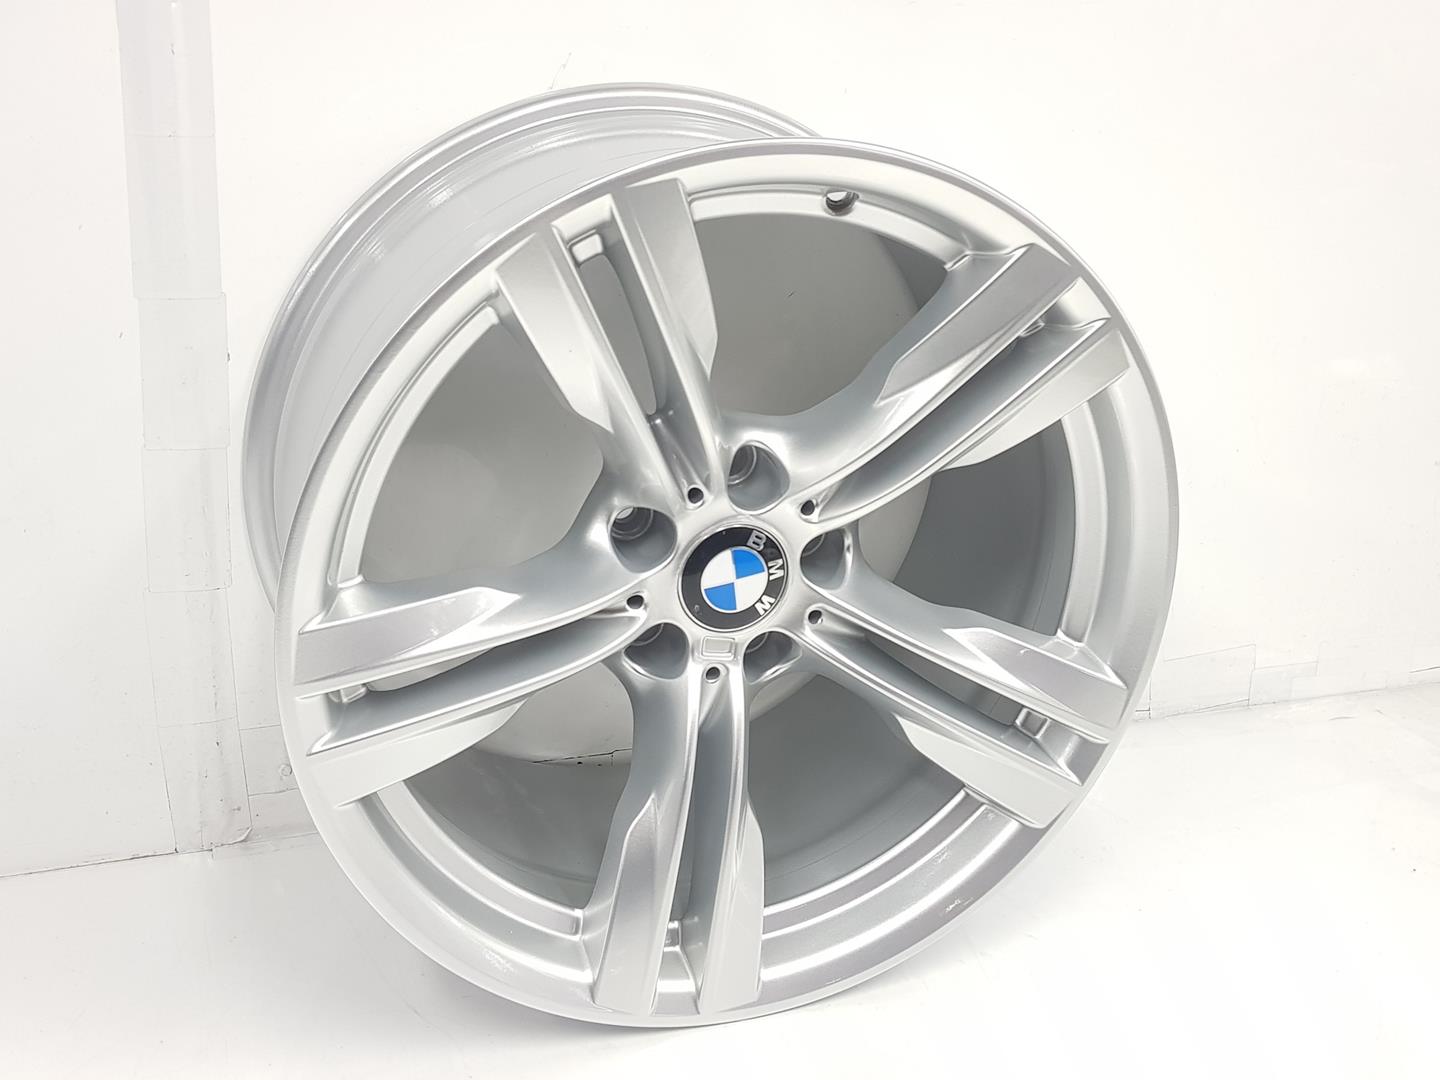 BMW X5 F15 (2013-2018) Wheel 36117846787, 10JX19, 19PULGADAS 24238638